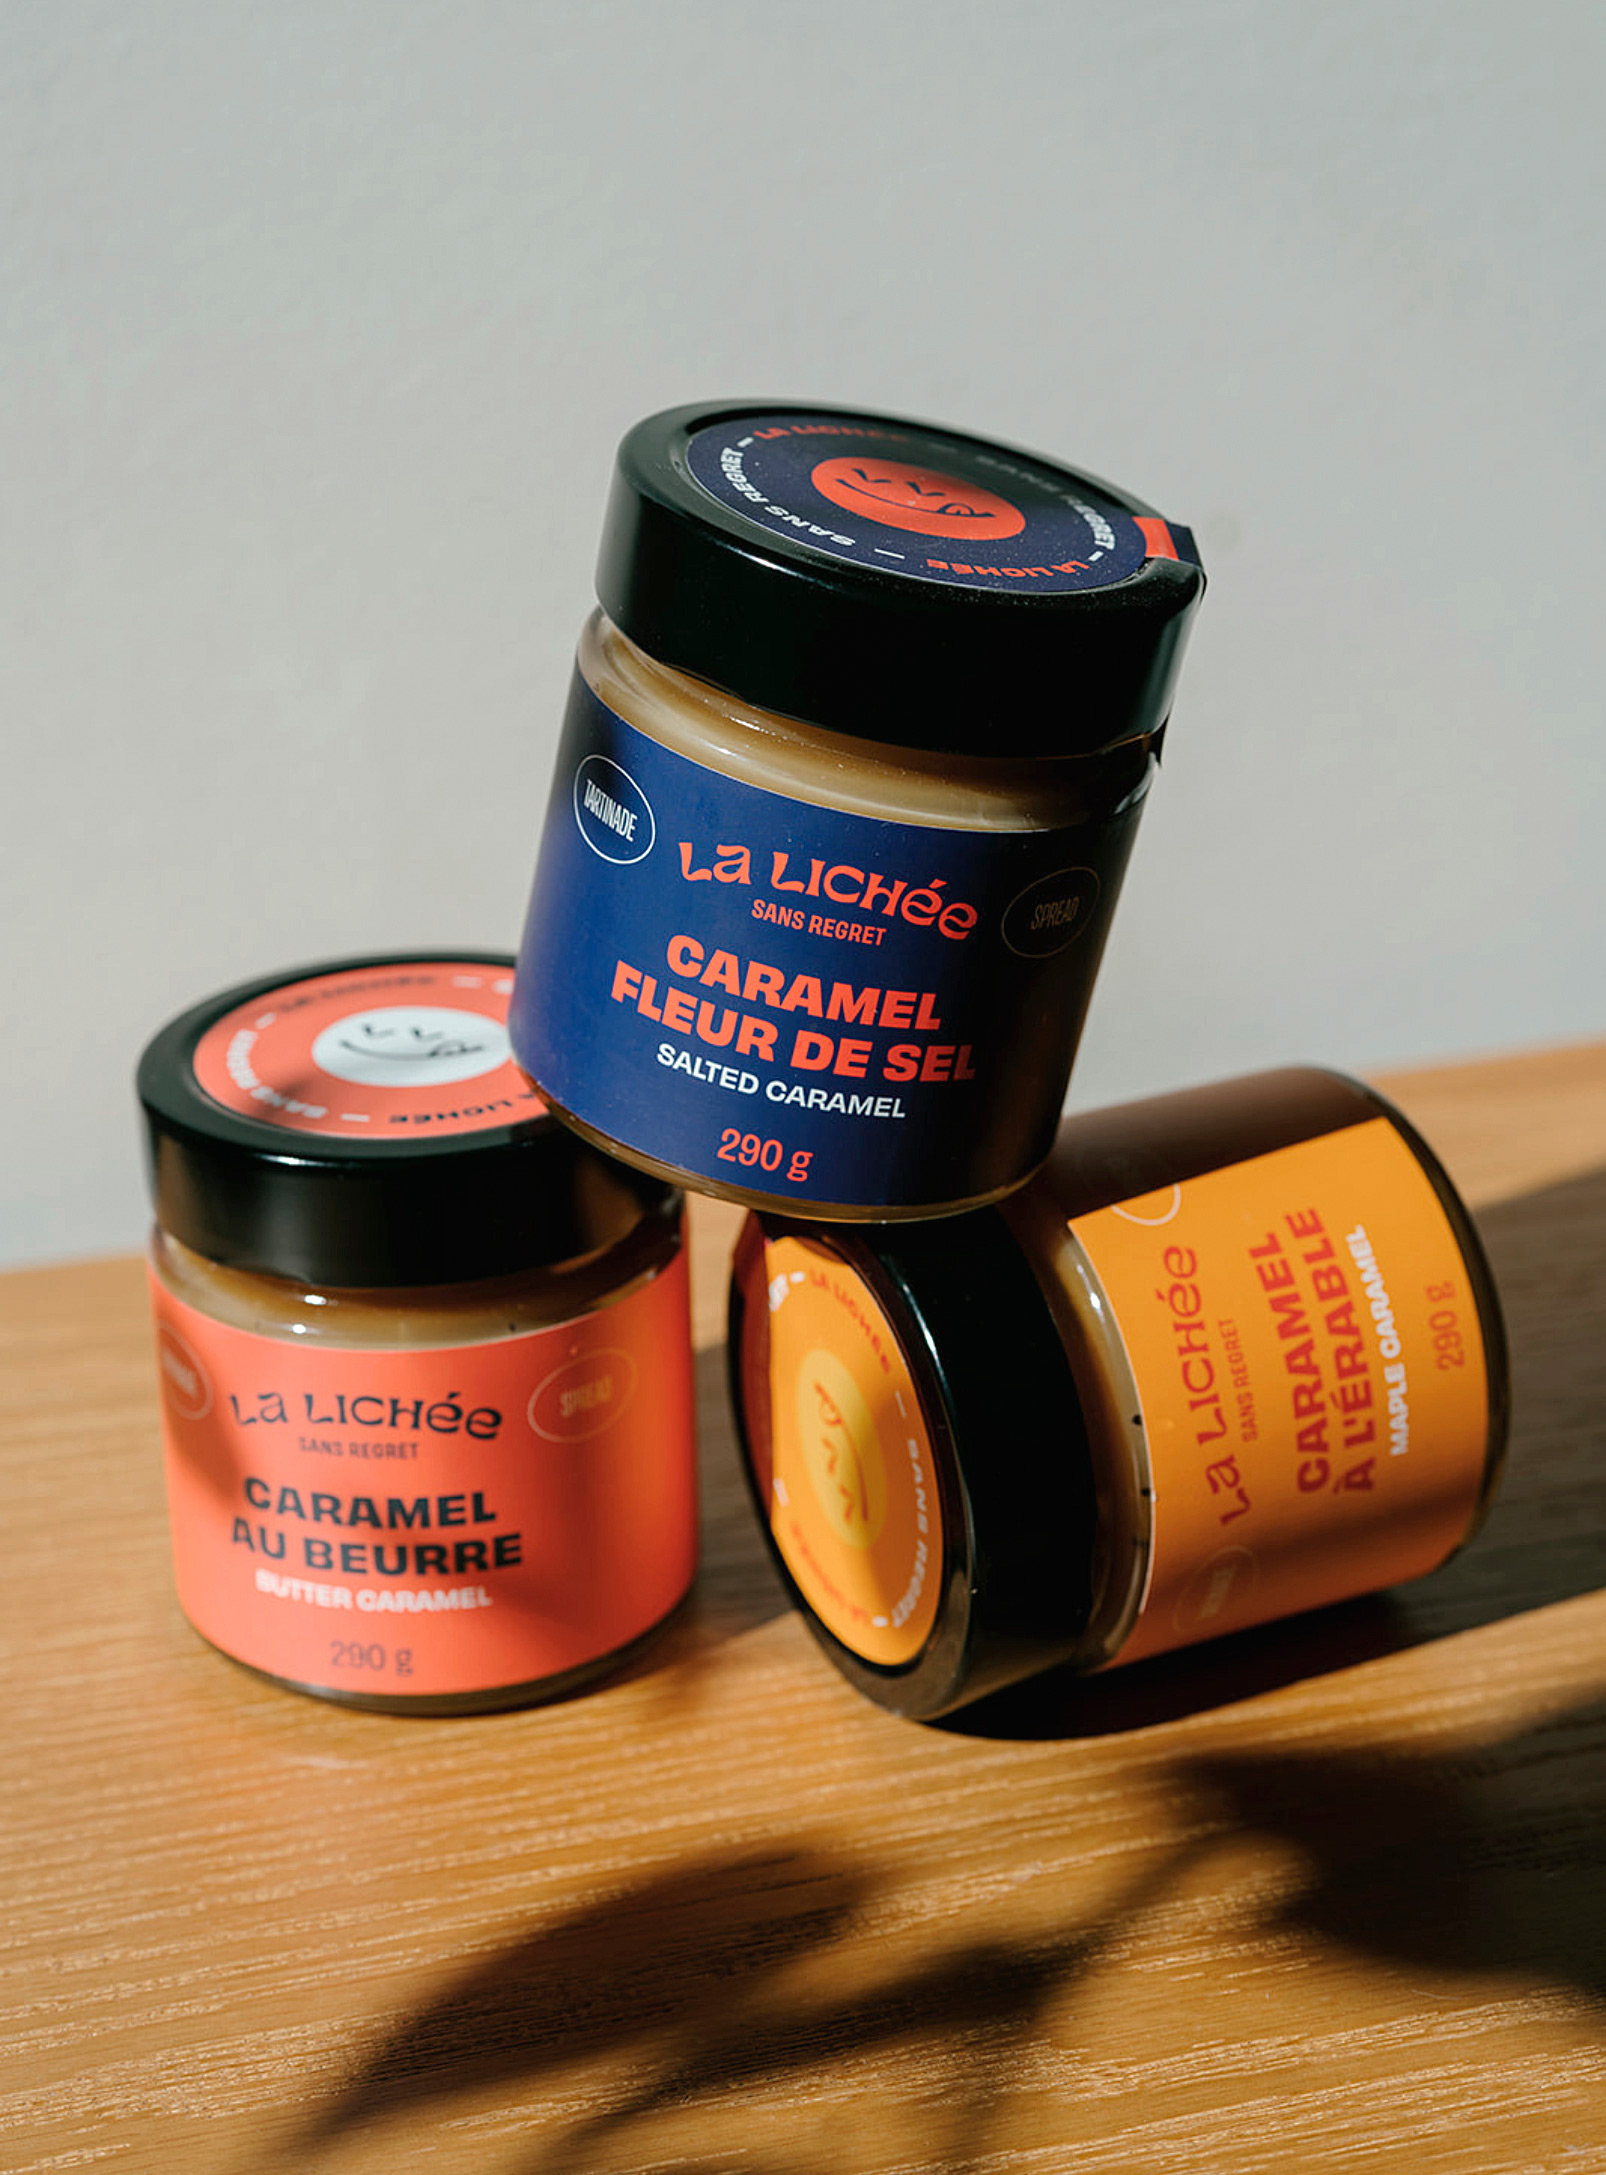 La Lichée - Classic caramel spread trio